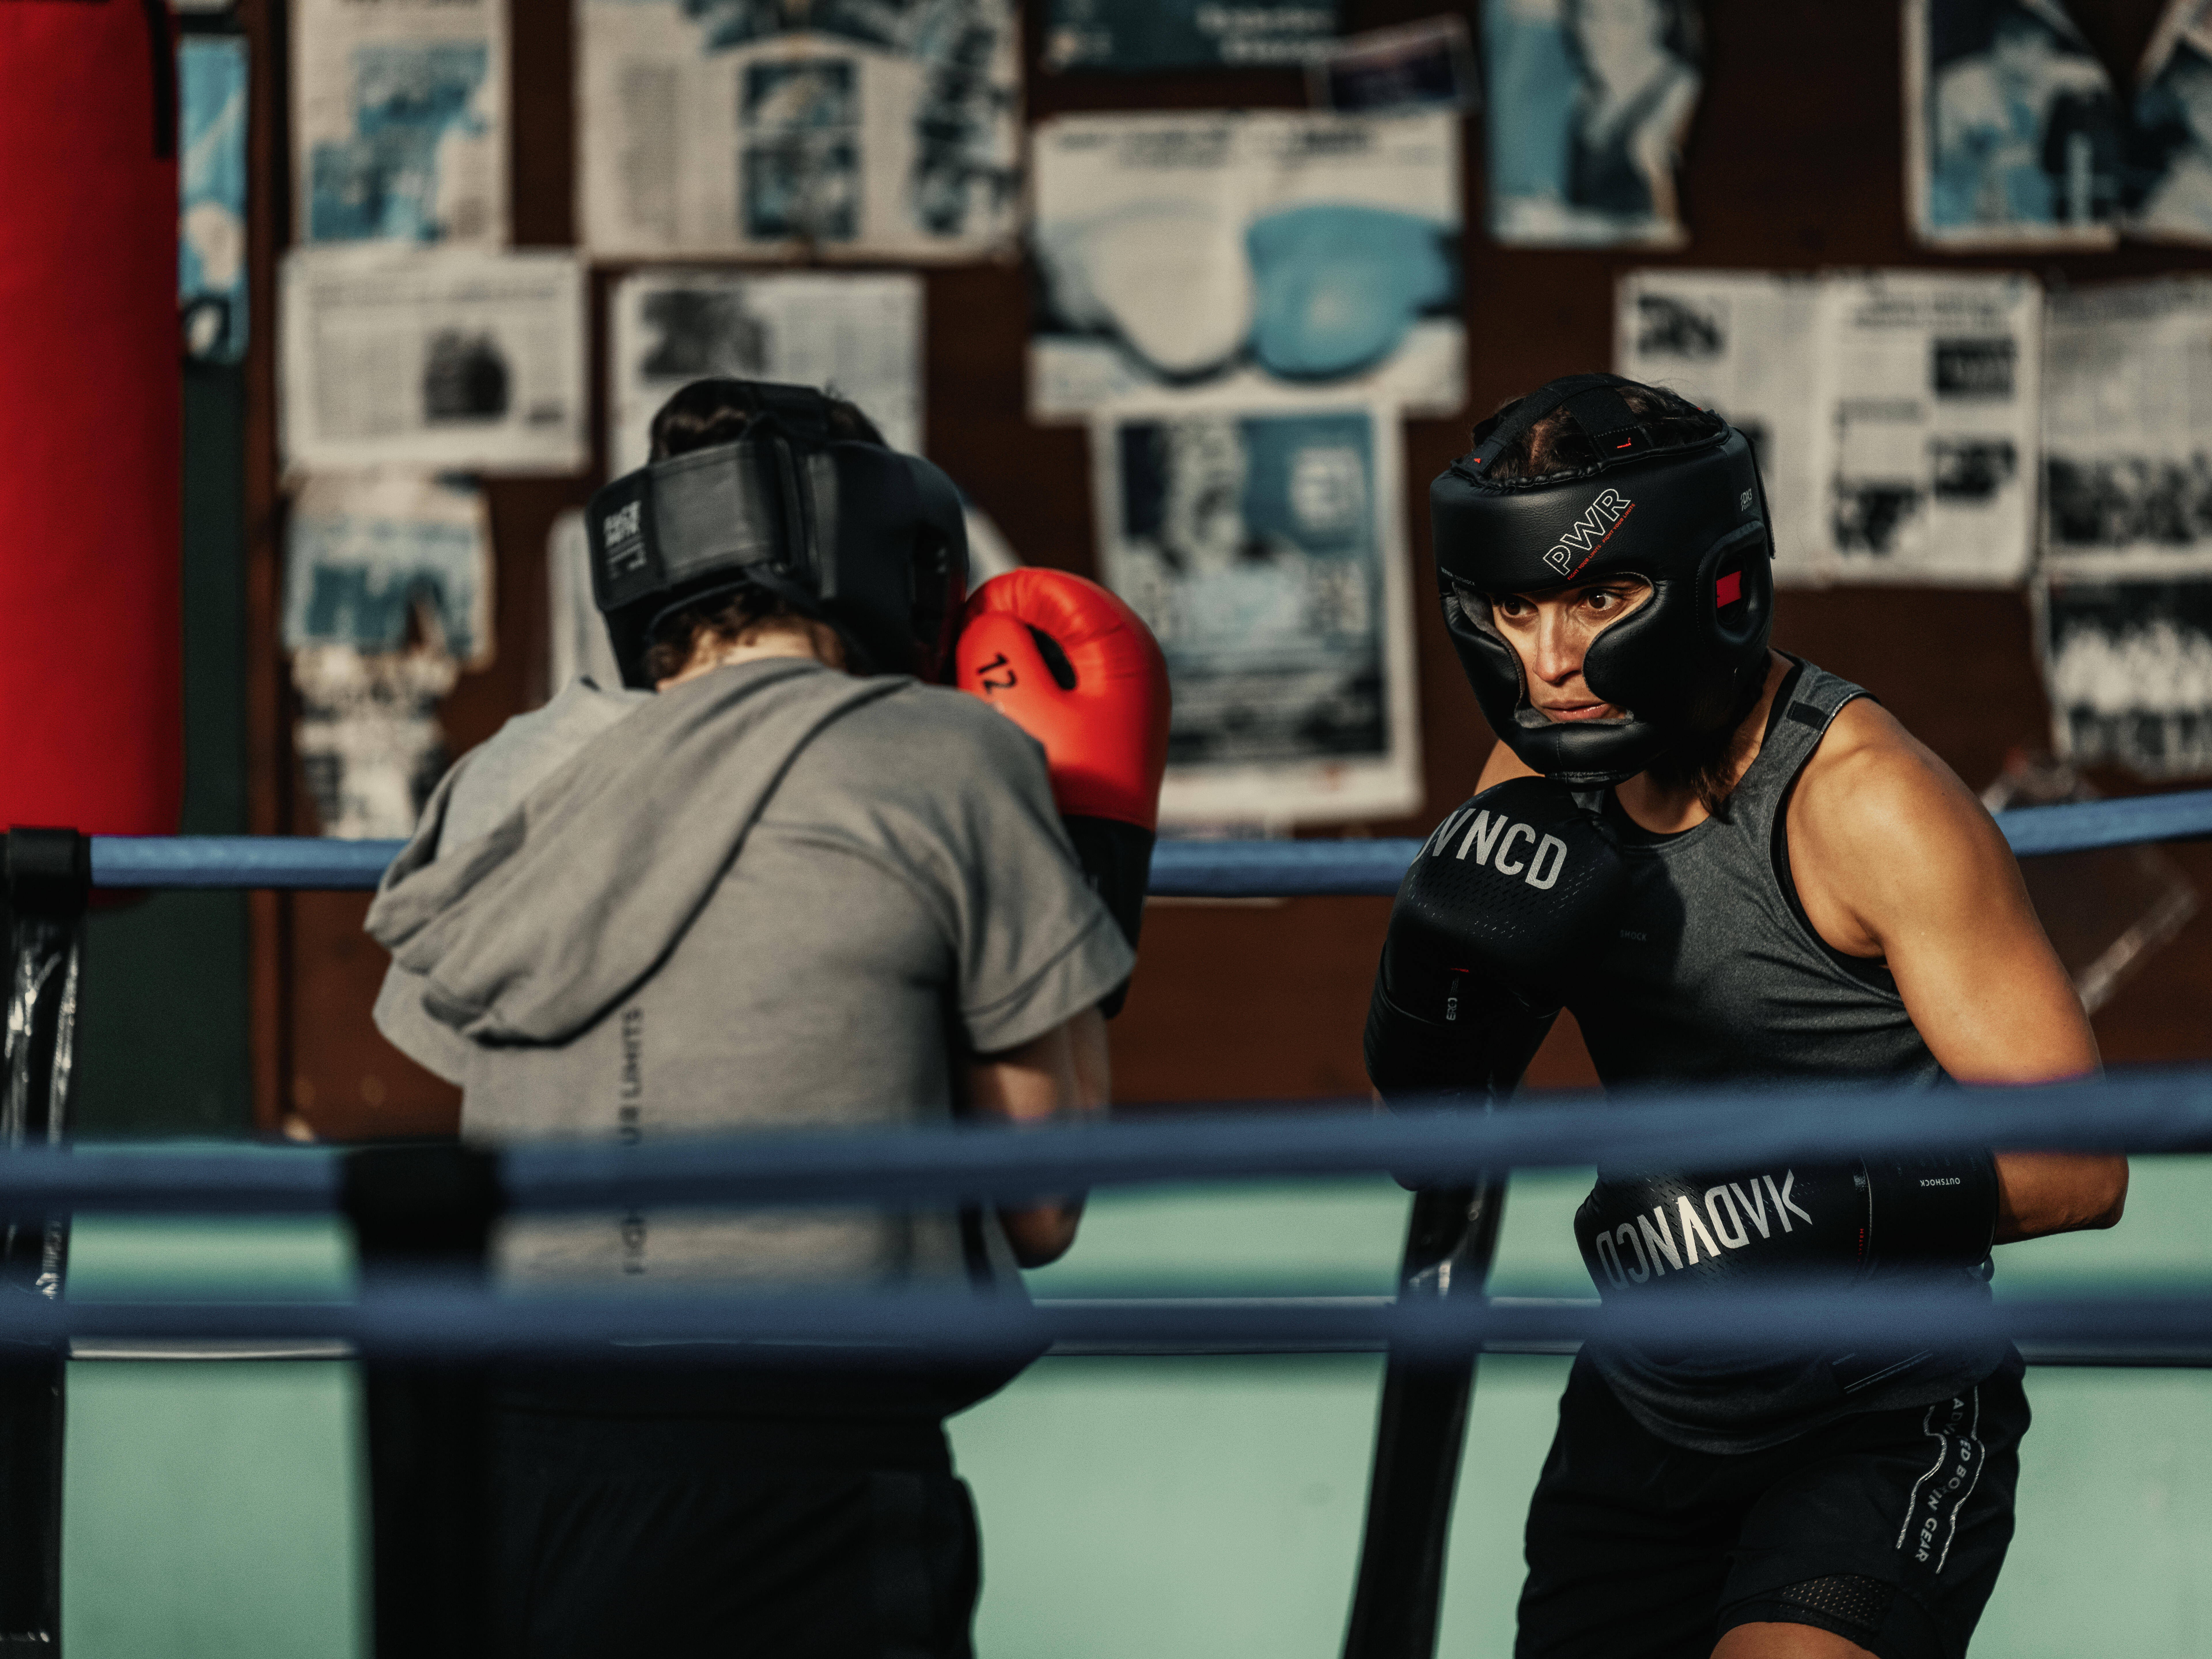 La boxe anglaise : histoire, règles et matériel - Casal Sport